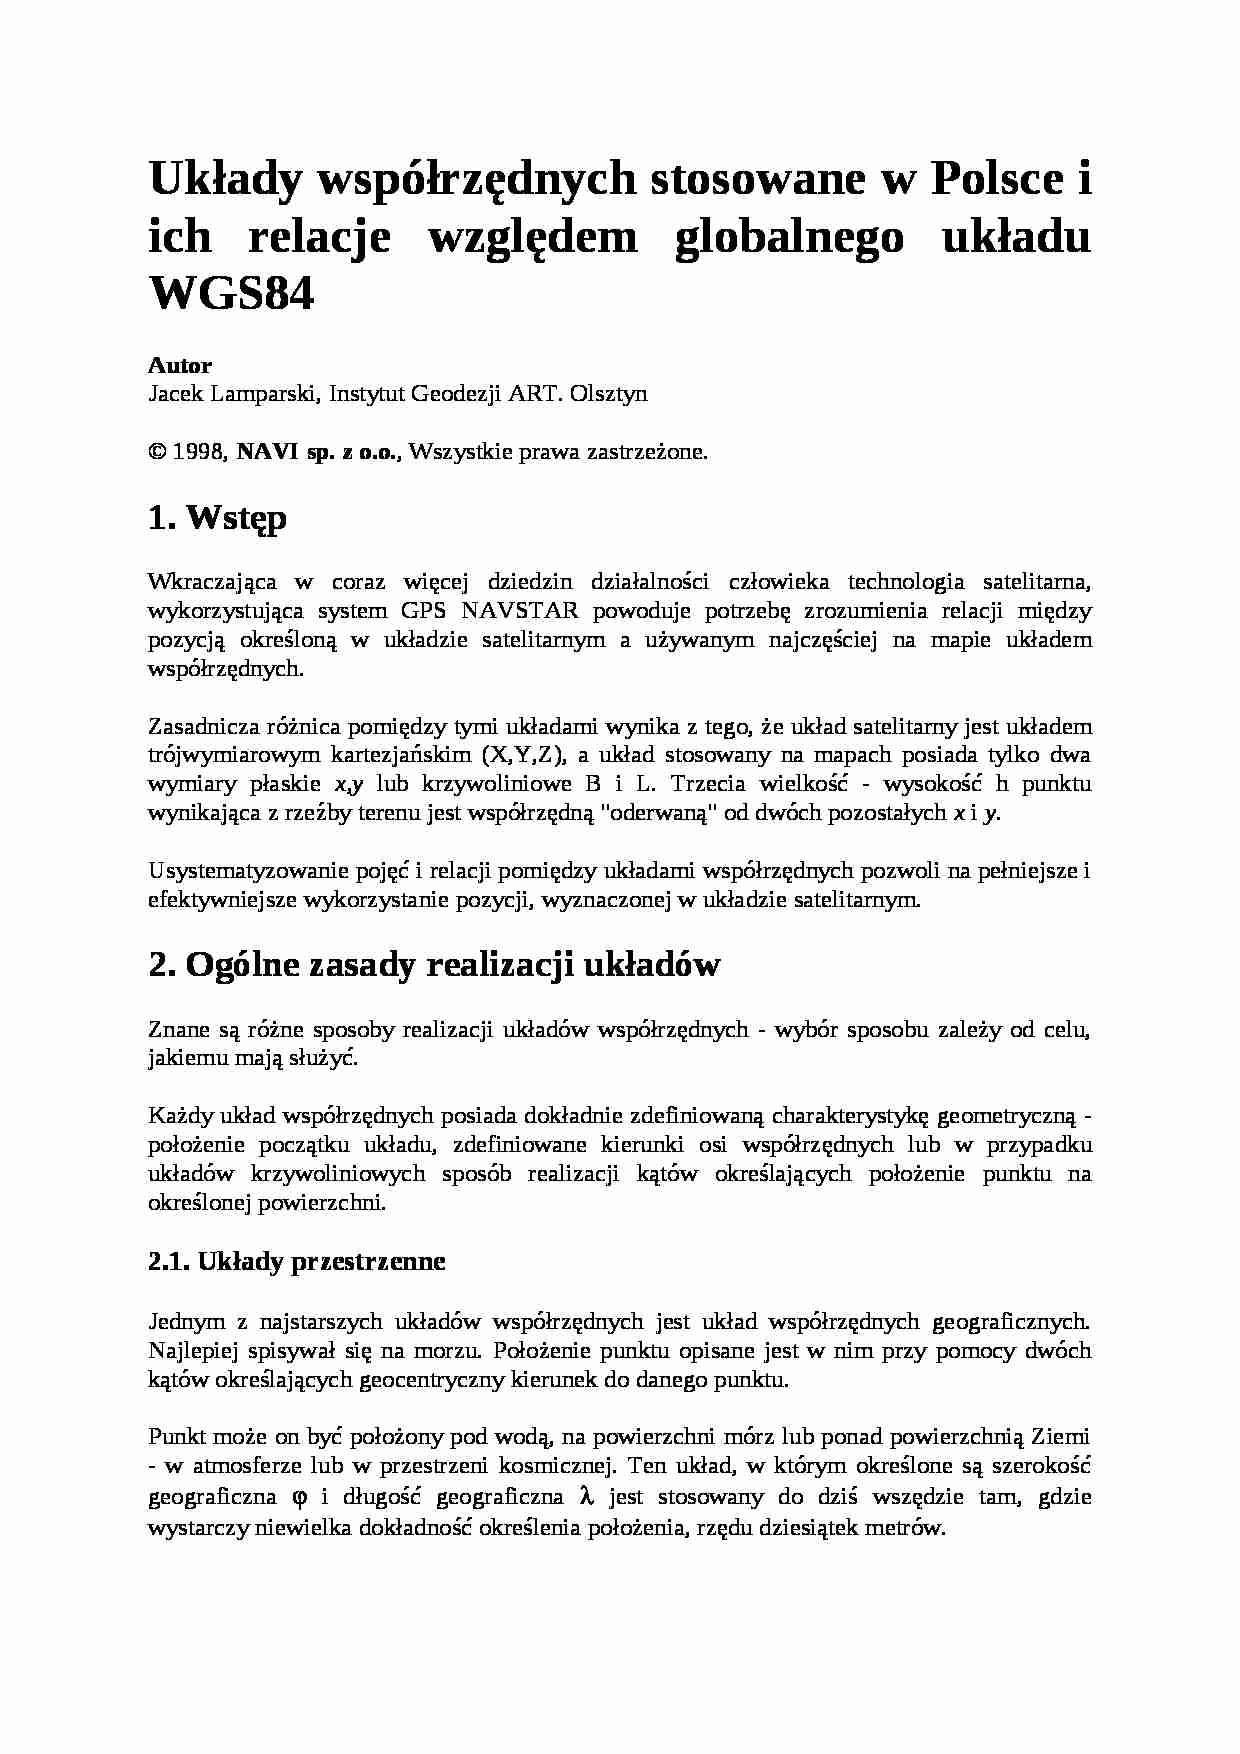 Układy współrzędnych stosowane w Polsce i ich relacje względem globalnego układu WGS84 - strona 1